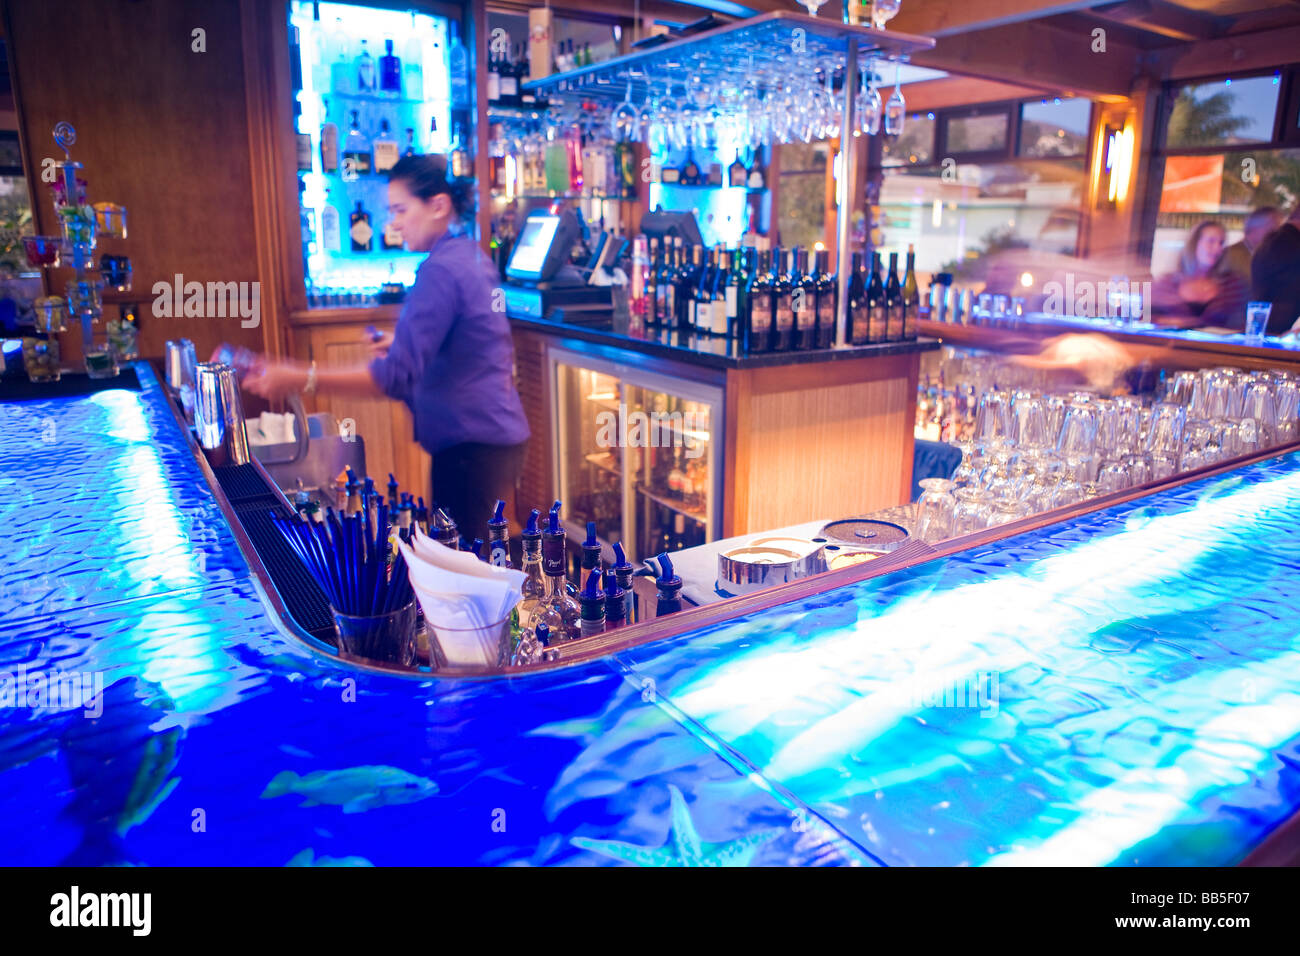 H2O Bar Wasserzeichen Restaurant Ventura Kalifornien Vereinigte Staaten von Amerika Stockfoto